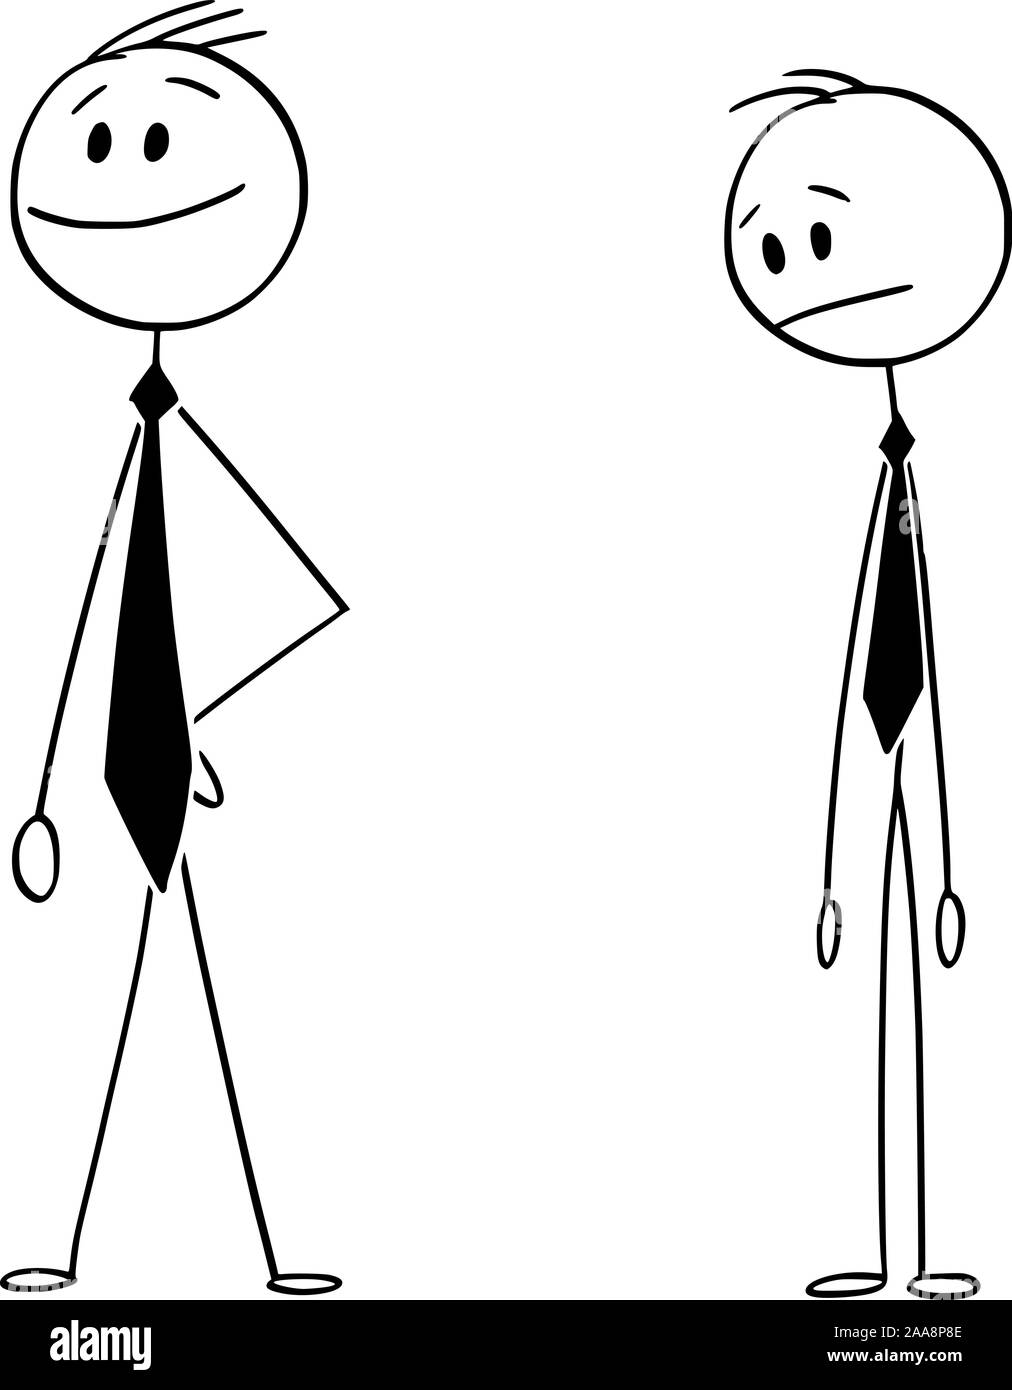 Vektor cartoon Strichmännchen Zeichnen konzeptionelle Darstellung der gewöhnliche Mensch schauen zuversichtlich Geschäftsmann tragen sehr lange Krawatte oder Krawatte. Stock Vektor